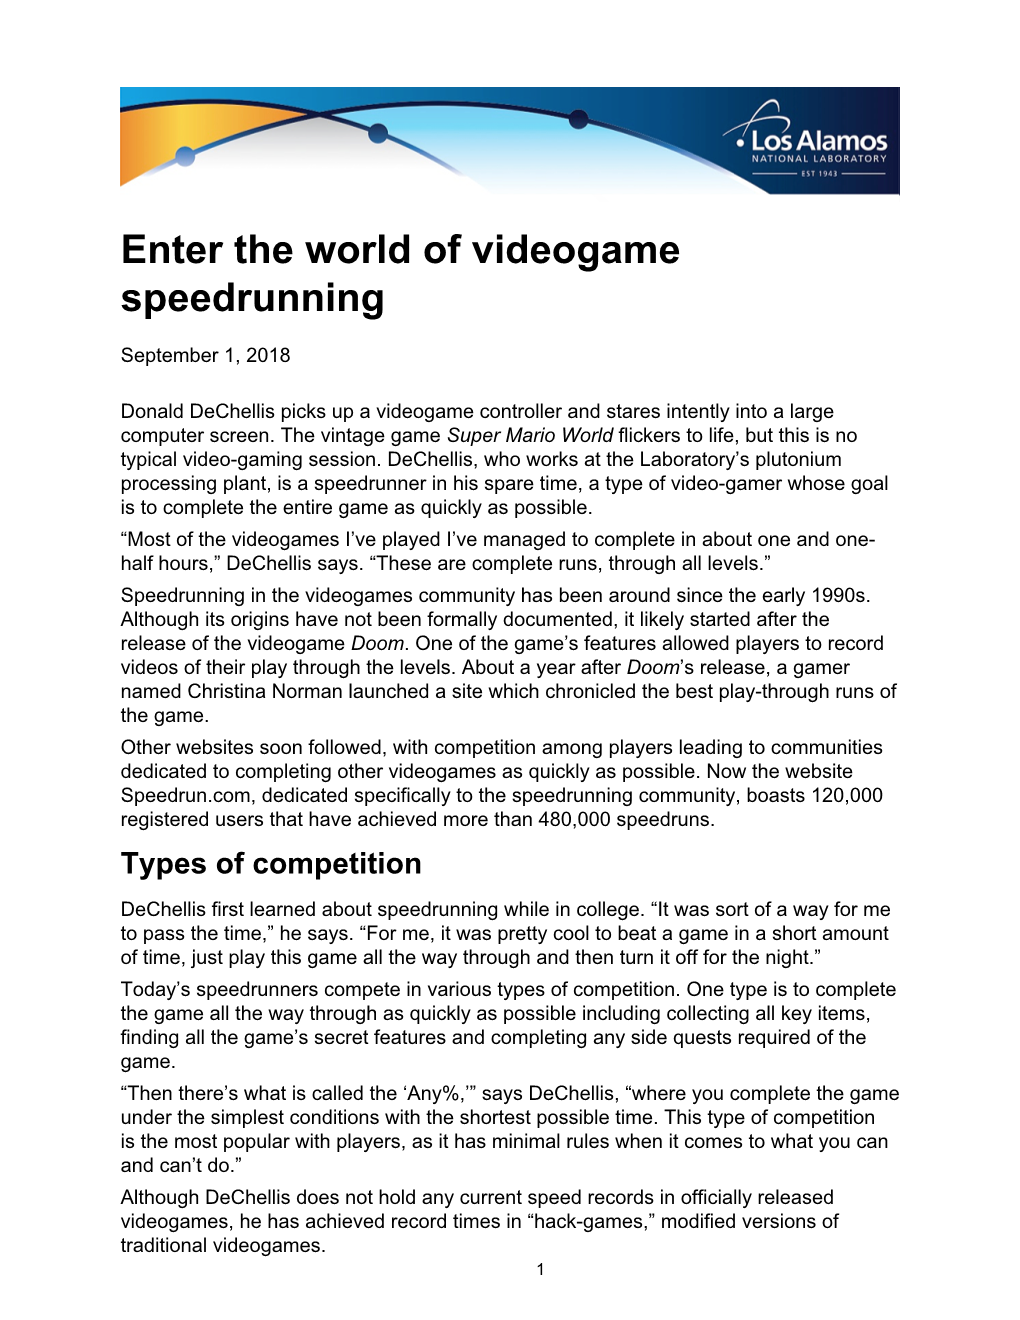 Enter the World of Videogame Speedrunning